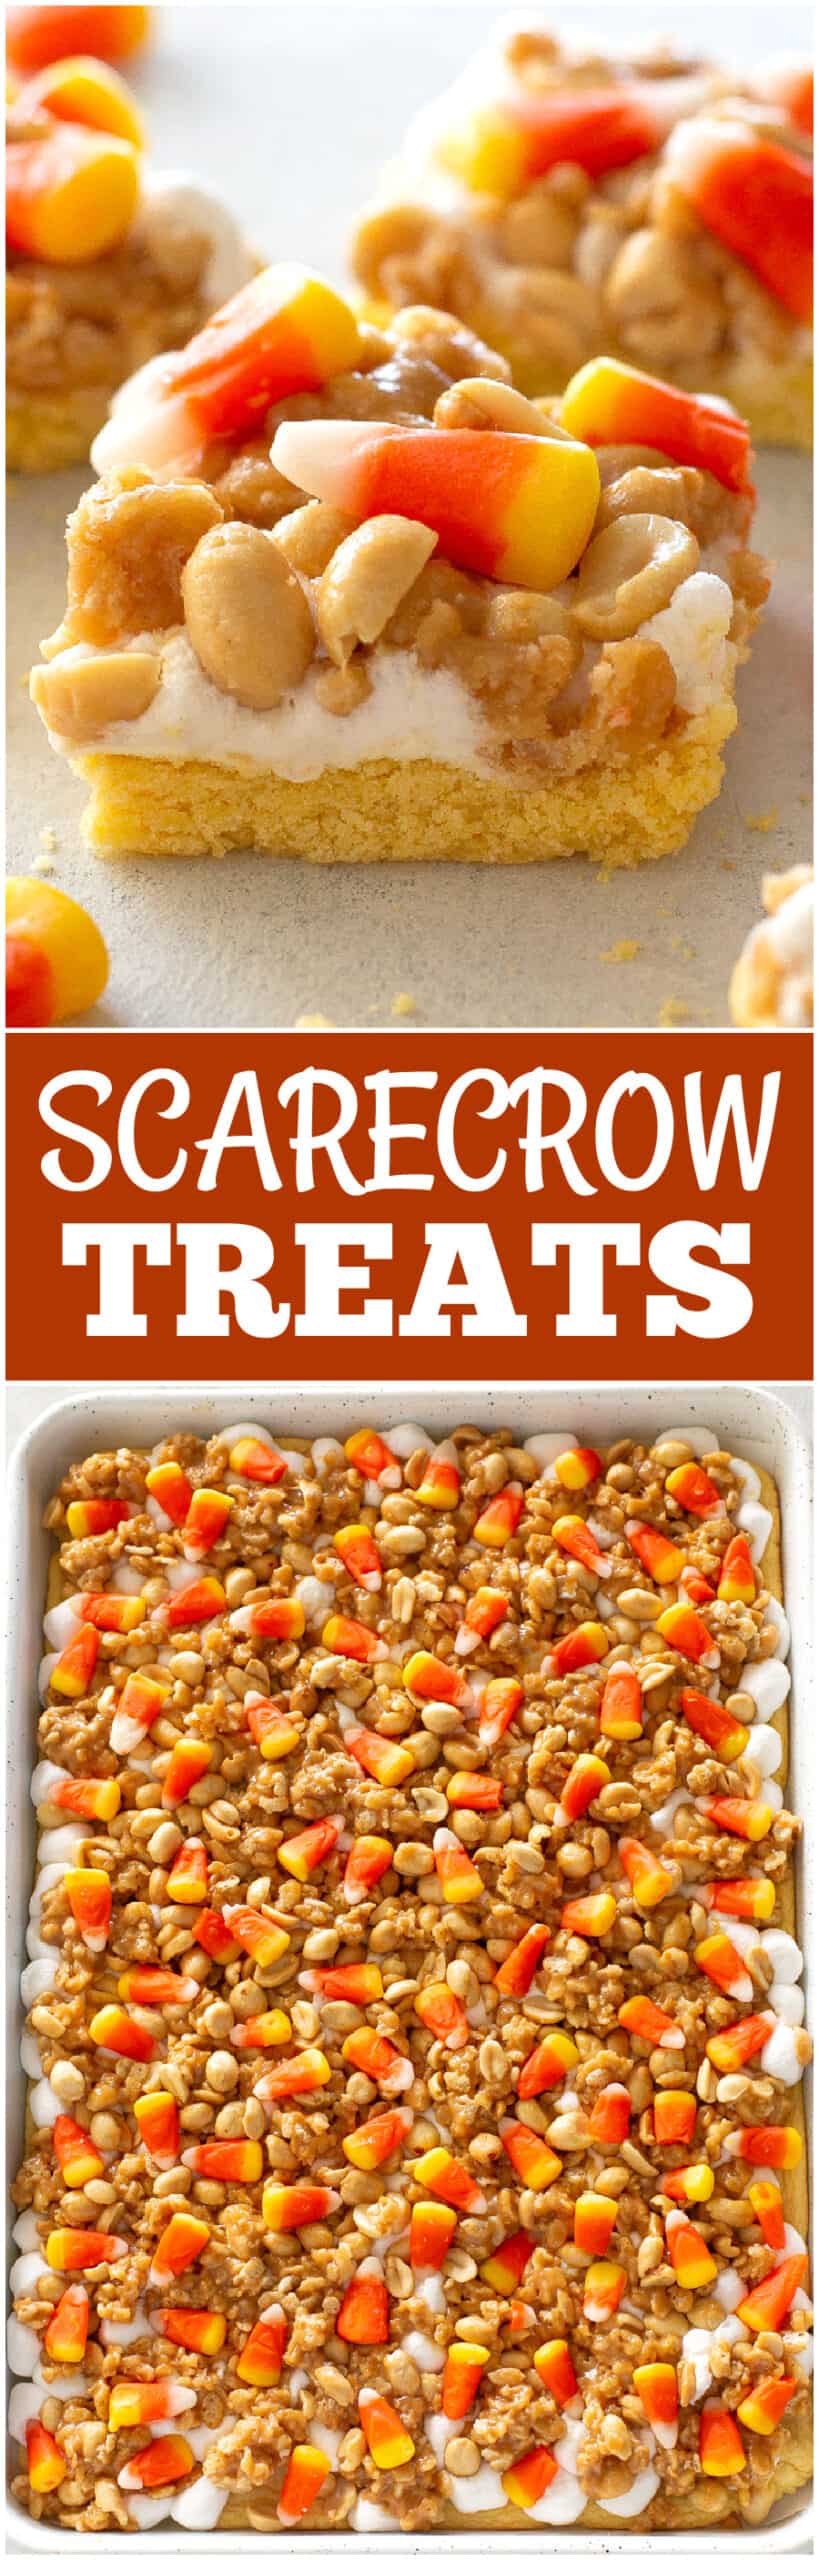 scarecrow treats